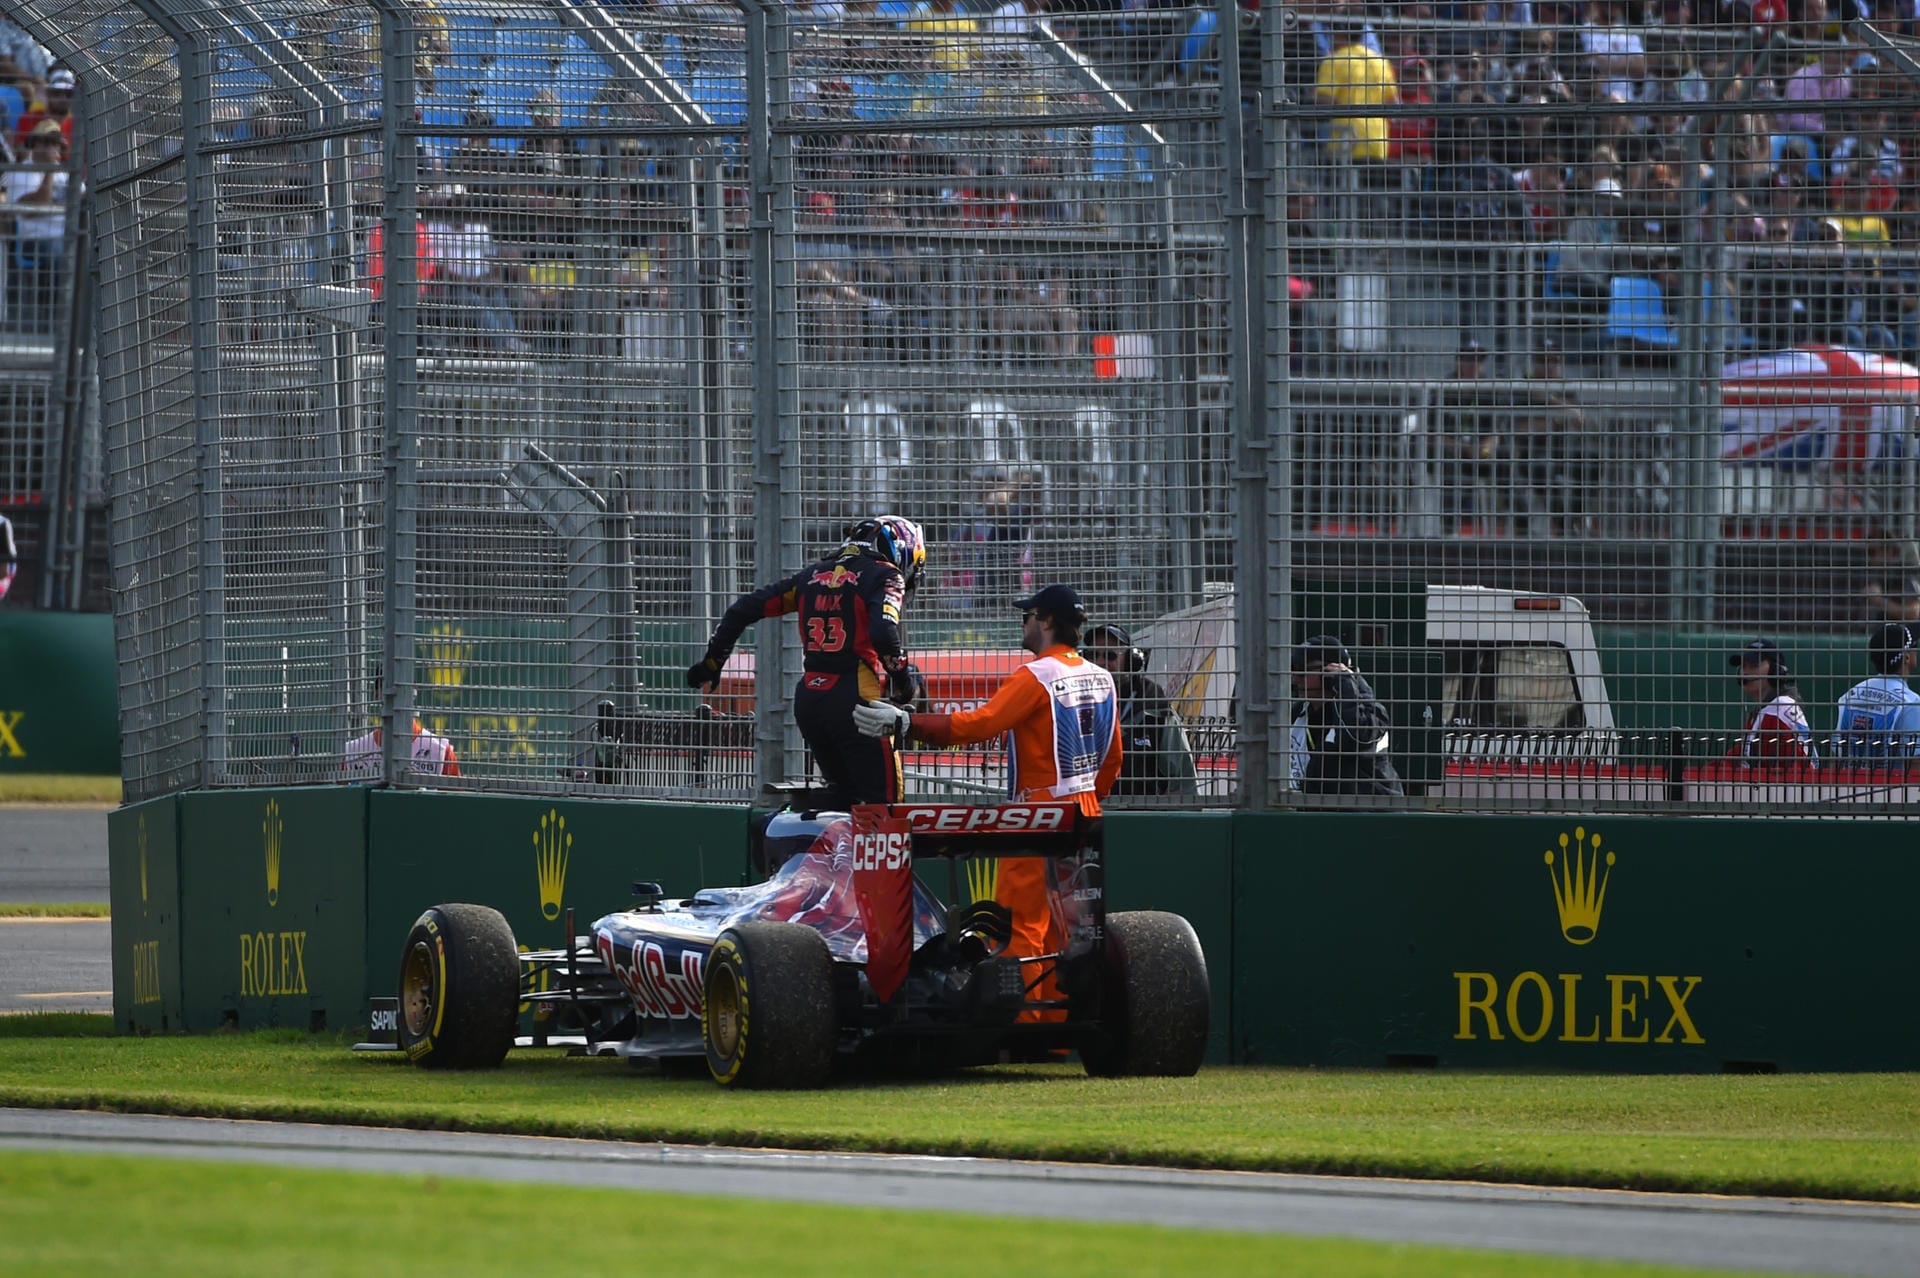 Bitteres Debüt in der Formel 1: 2015 feiert Verstappen seinen Einstand in der Königsklasse für Toro Rosso – und fällt direkt zum Start beim Großen Preis von Australien in Melbourne aus.